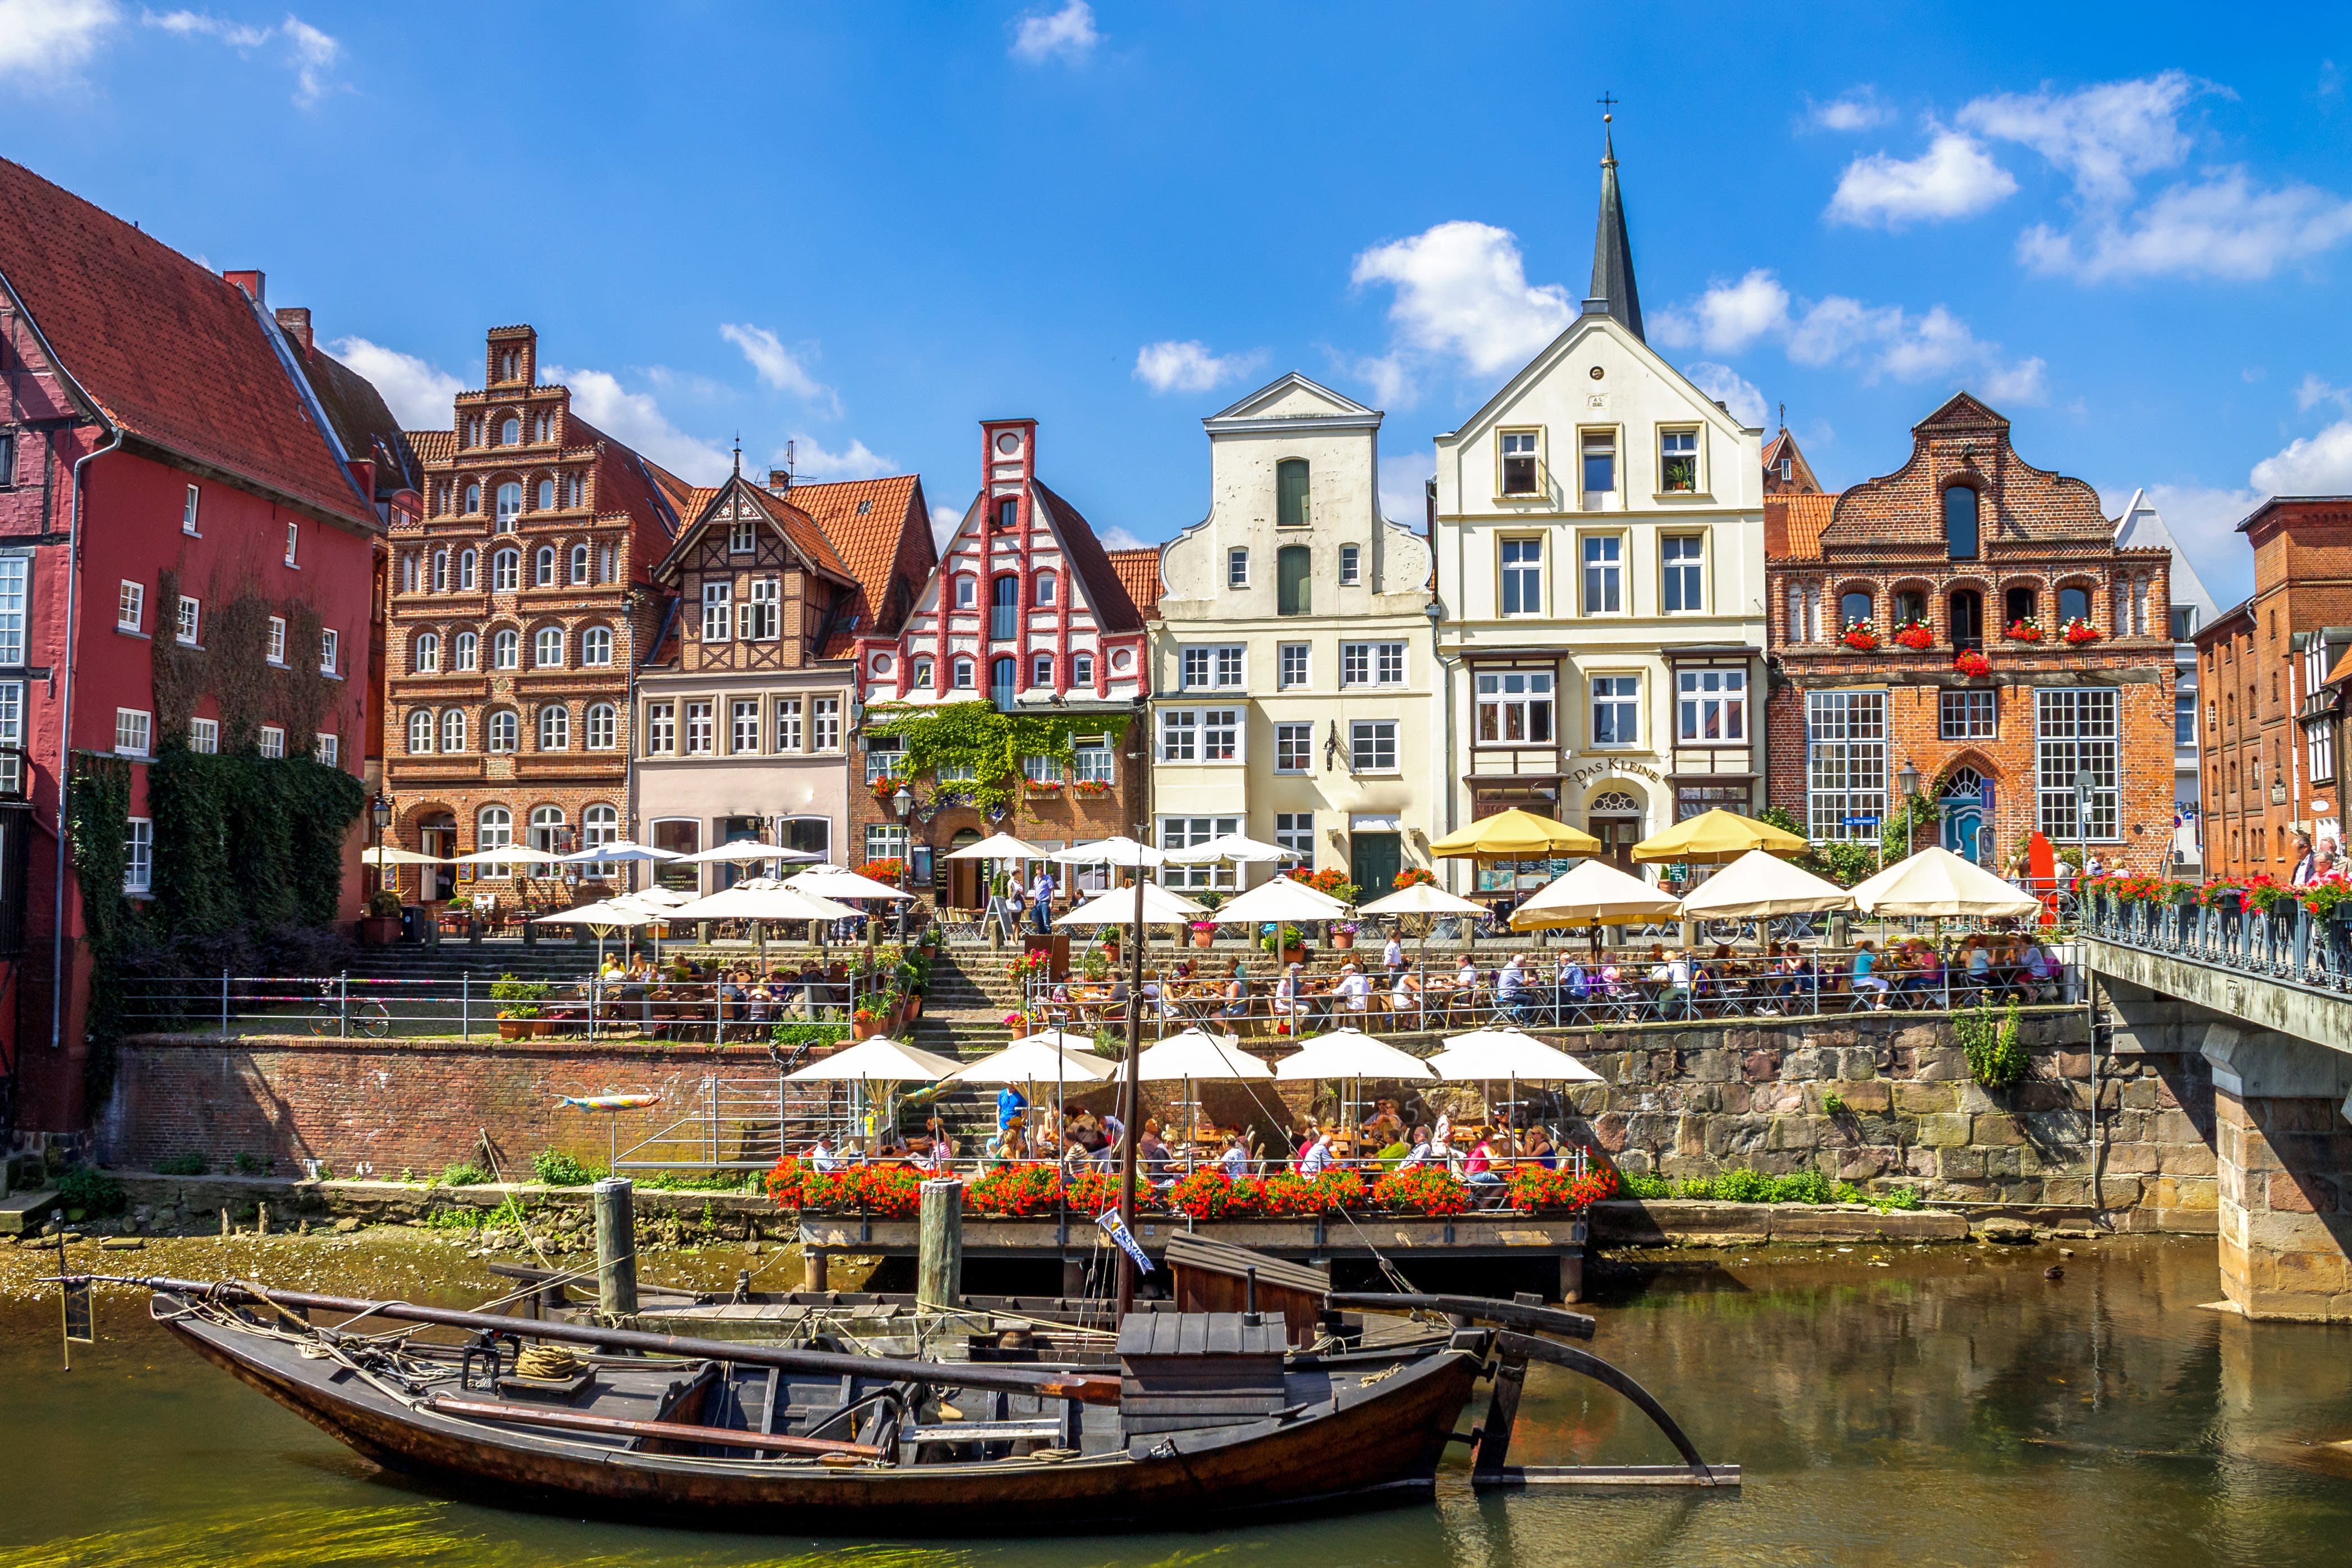 Ansicht der Stadt Lüneburg mit historischen Gebäuden, Fluss und Boot